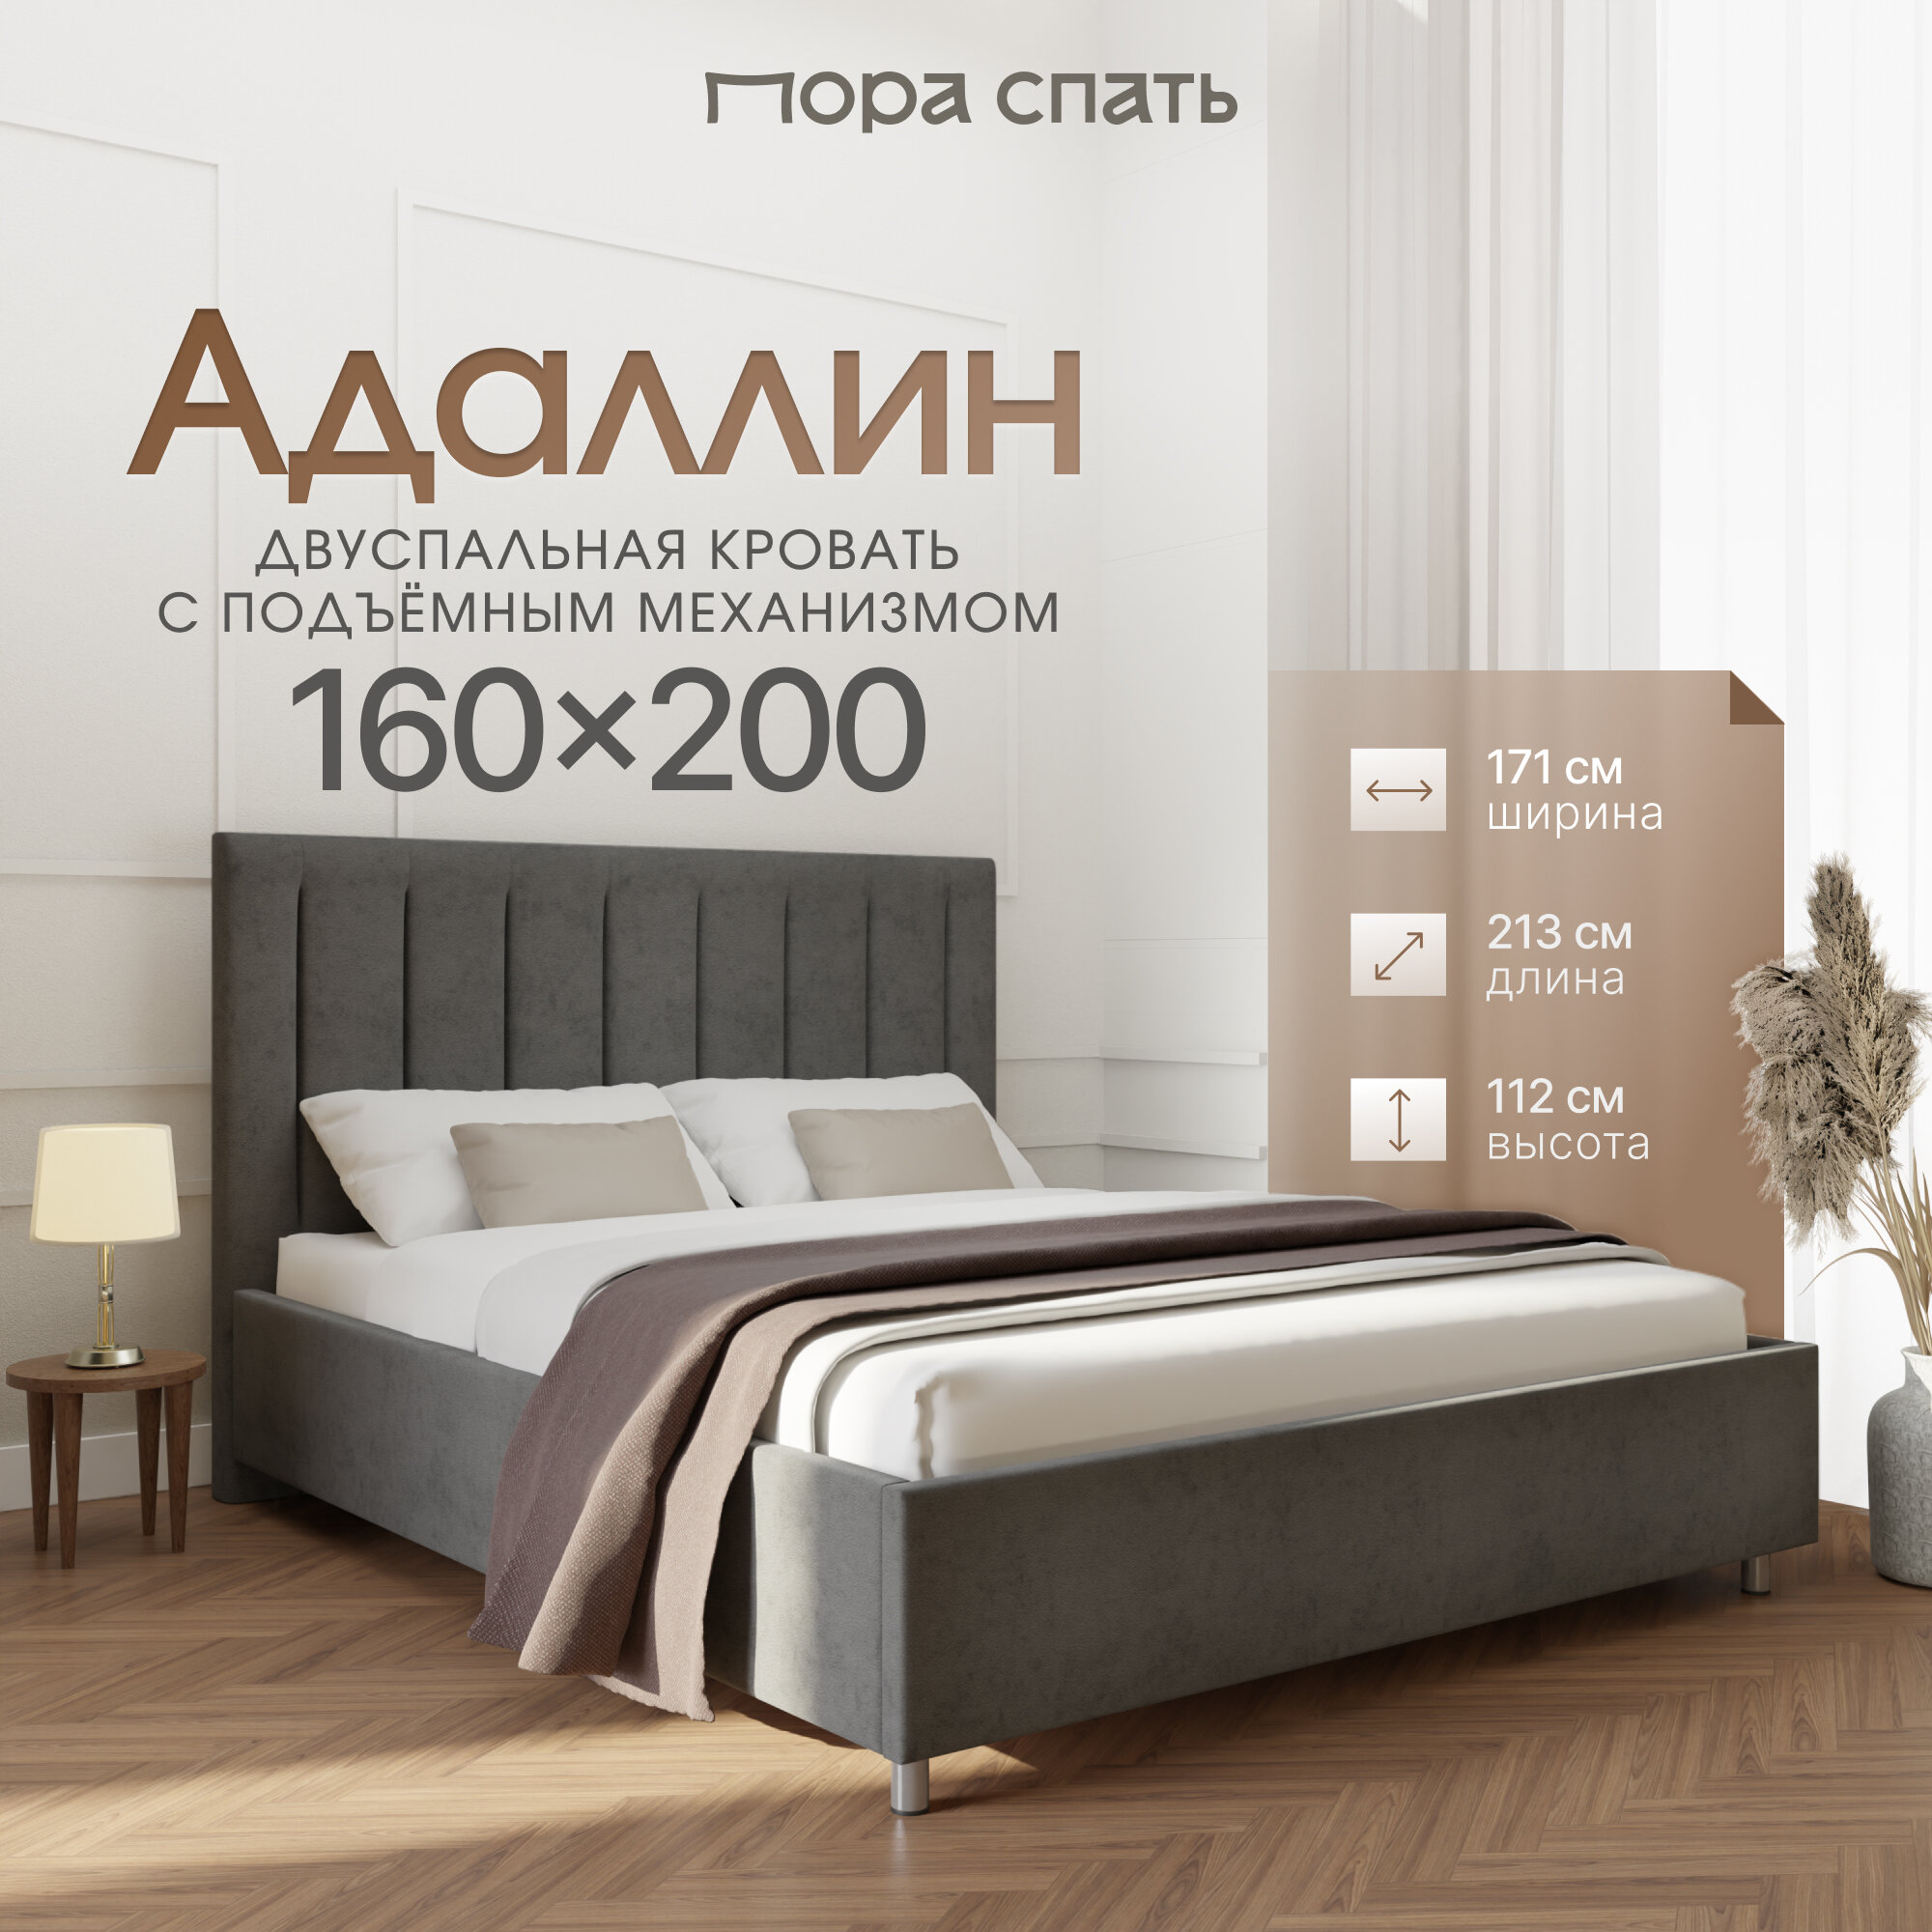 Кровать Пора Спать, Адаллин, с подъемным механизмом, спальное место: 160х200см, габариты: 171х213см, цвет: серый